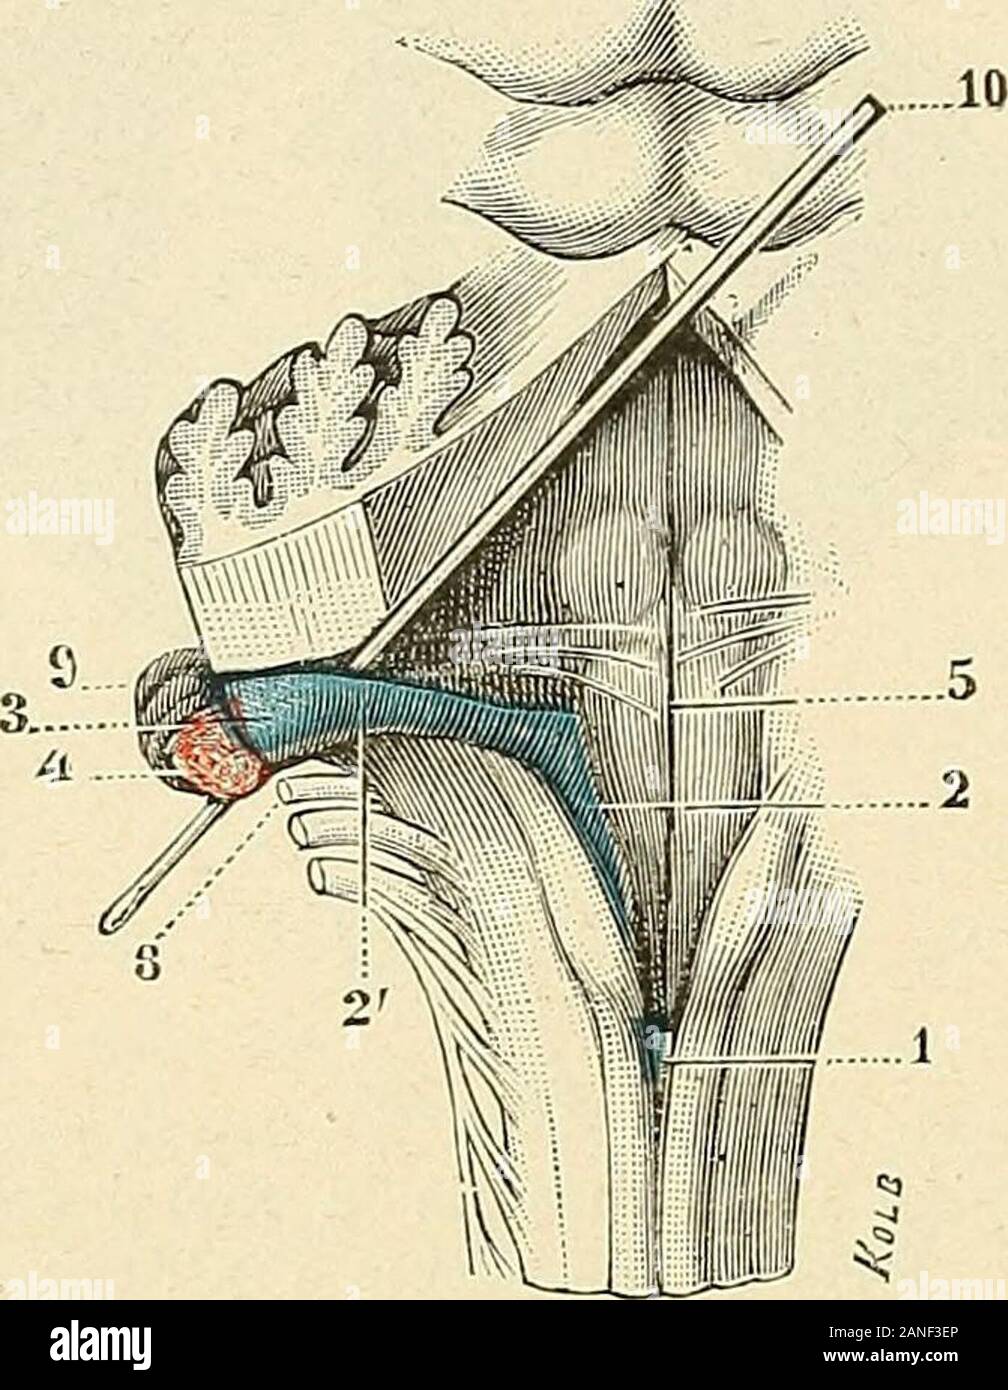 Traité d'anatomie humaine . t(5ro-iufé-rieurc, a été forlcmeut renversé en liant et enavant ; les tonsilles ont été enlevées comme dans lafigure 402.) 1, vermis inférieur, avec l, luette. — iî, lobulesdu pneumogastrique. — 3, bulbe, vu par sa lace pos-térieure. — 4, valvules de Tarin. — 3, membranatectoria, dont le bord supérieur se conlinue, dunepart avec le sommet de la luette, dautre part avecle bord antérieur ou concave des valvules de Tarin.?— C, trou de Magendie. — 7, pyramide postérieure. 592 NEVROLOGIE La portion externe ou ligula externe (ligula antérieure de la plupart desauteurs) su Stock Photo